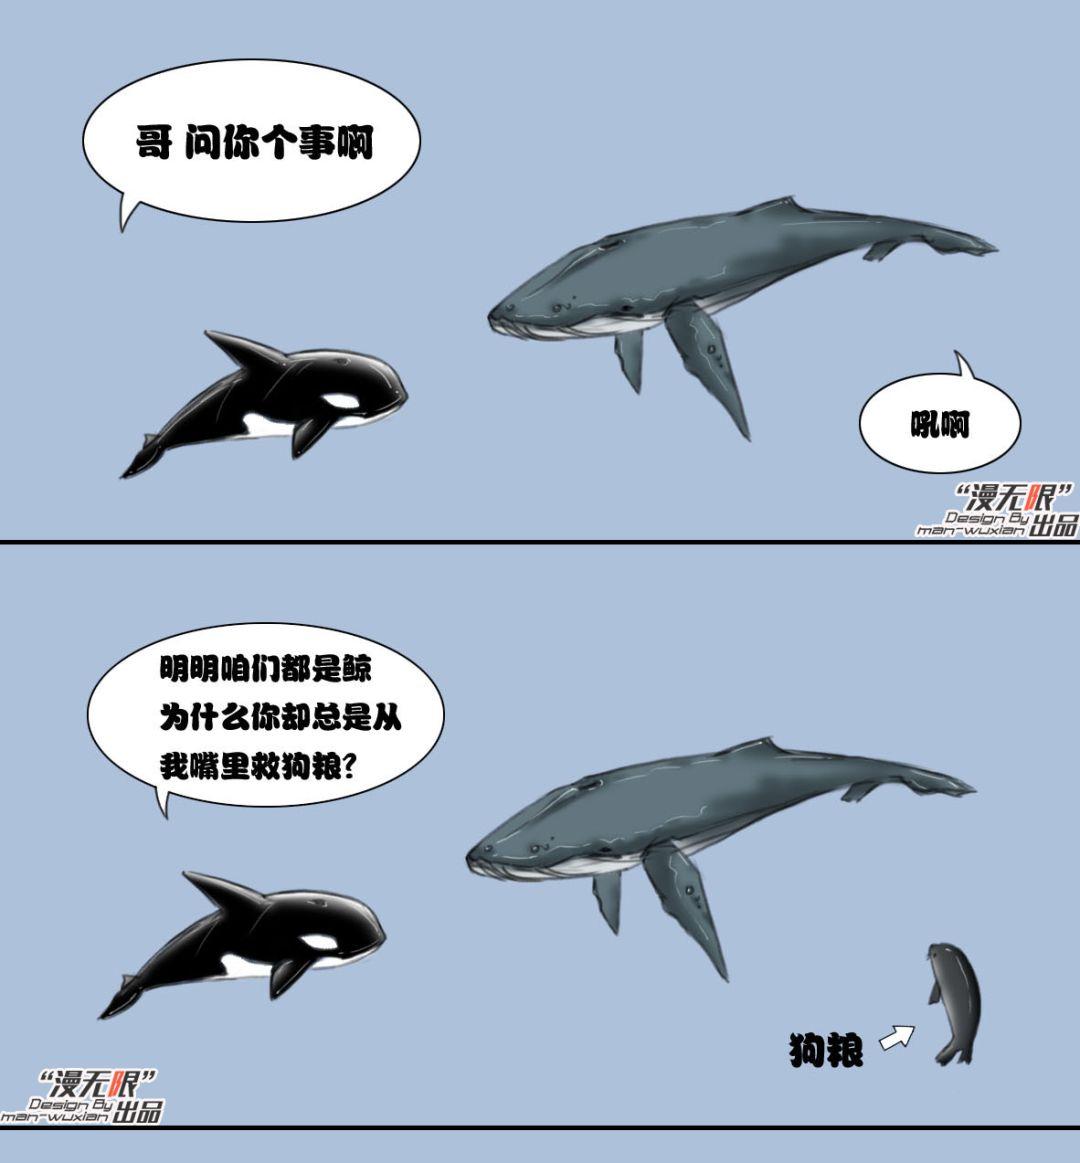 趣味漫画:虎鲸和座头鲸的恩怨纠葛